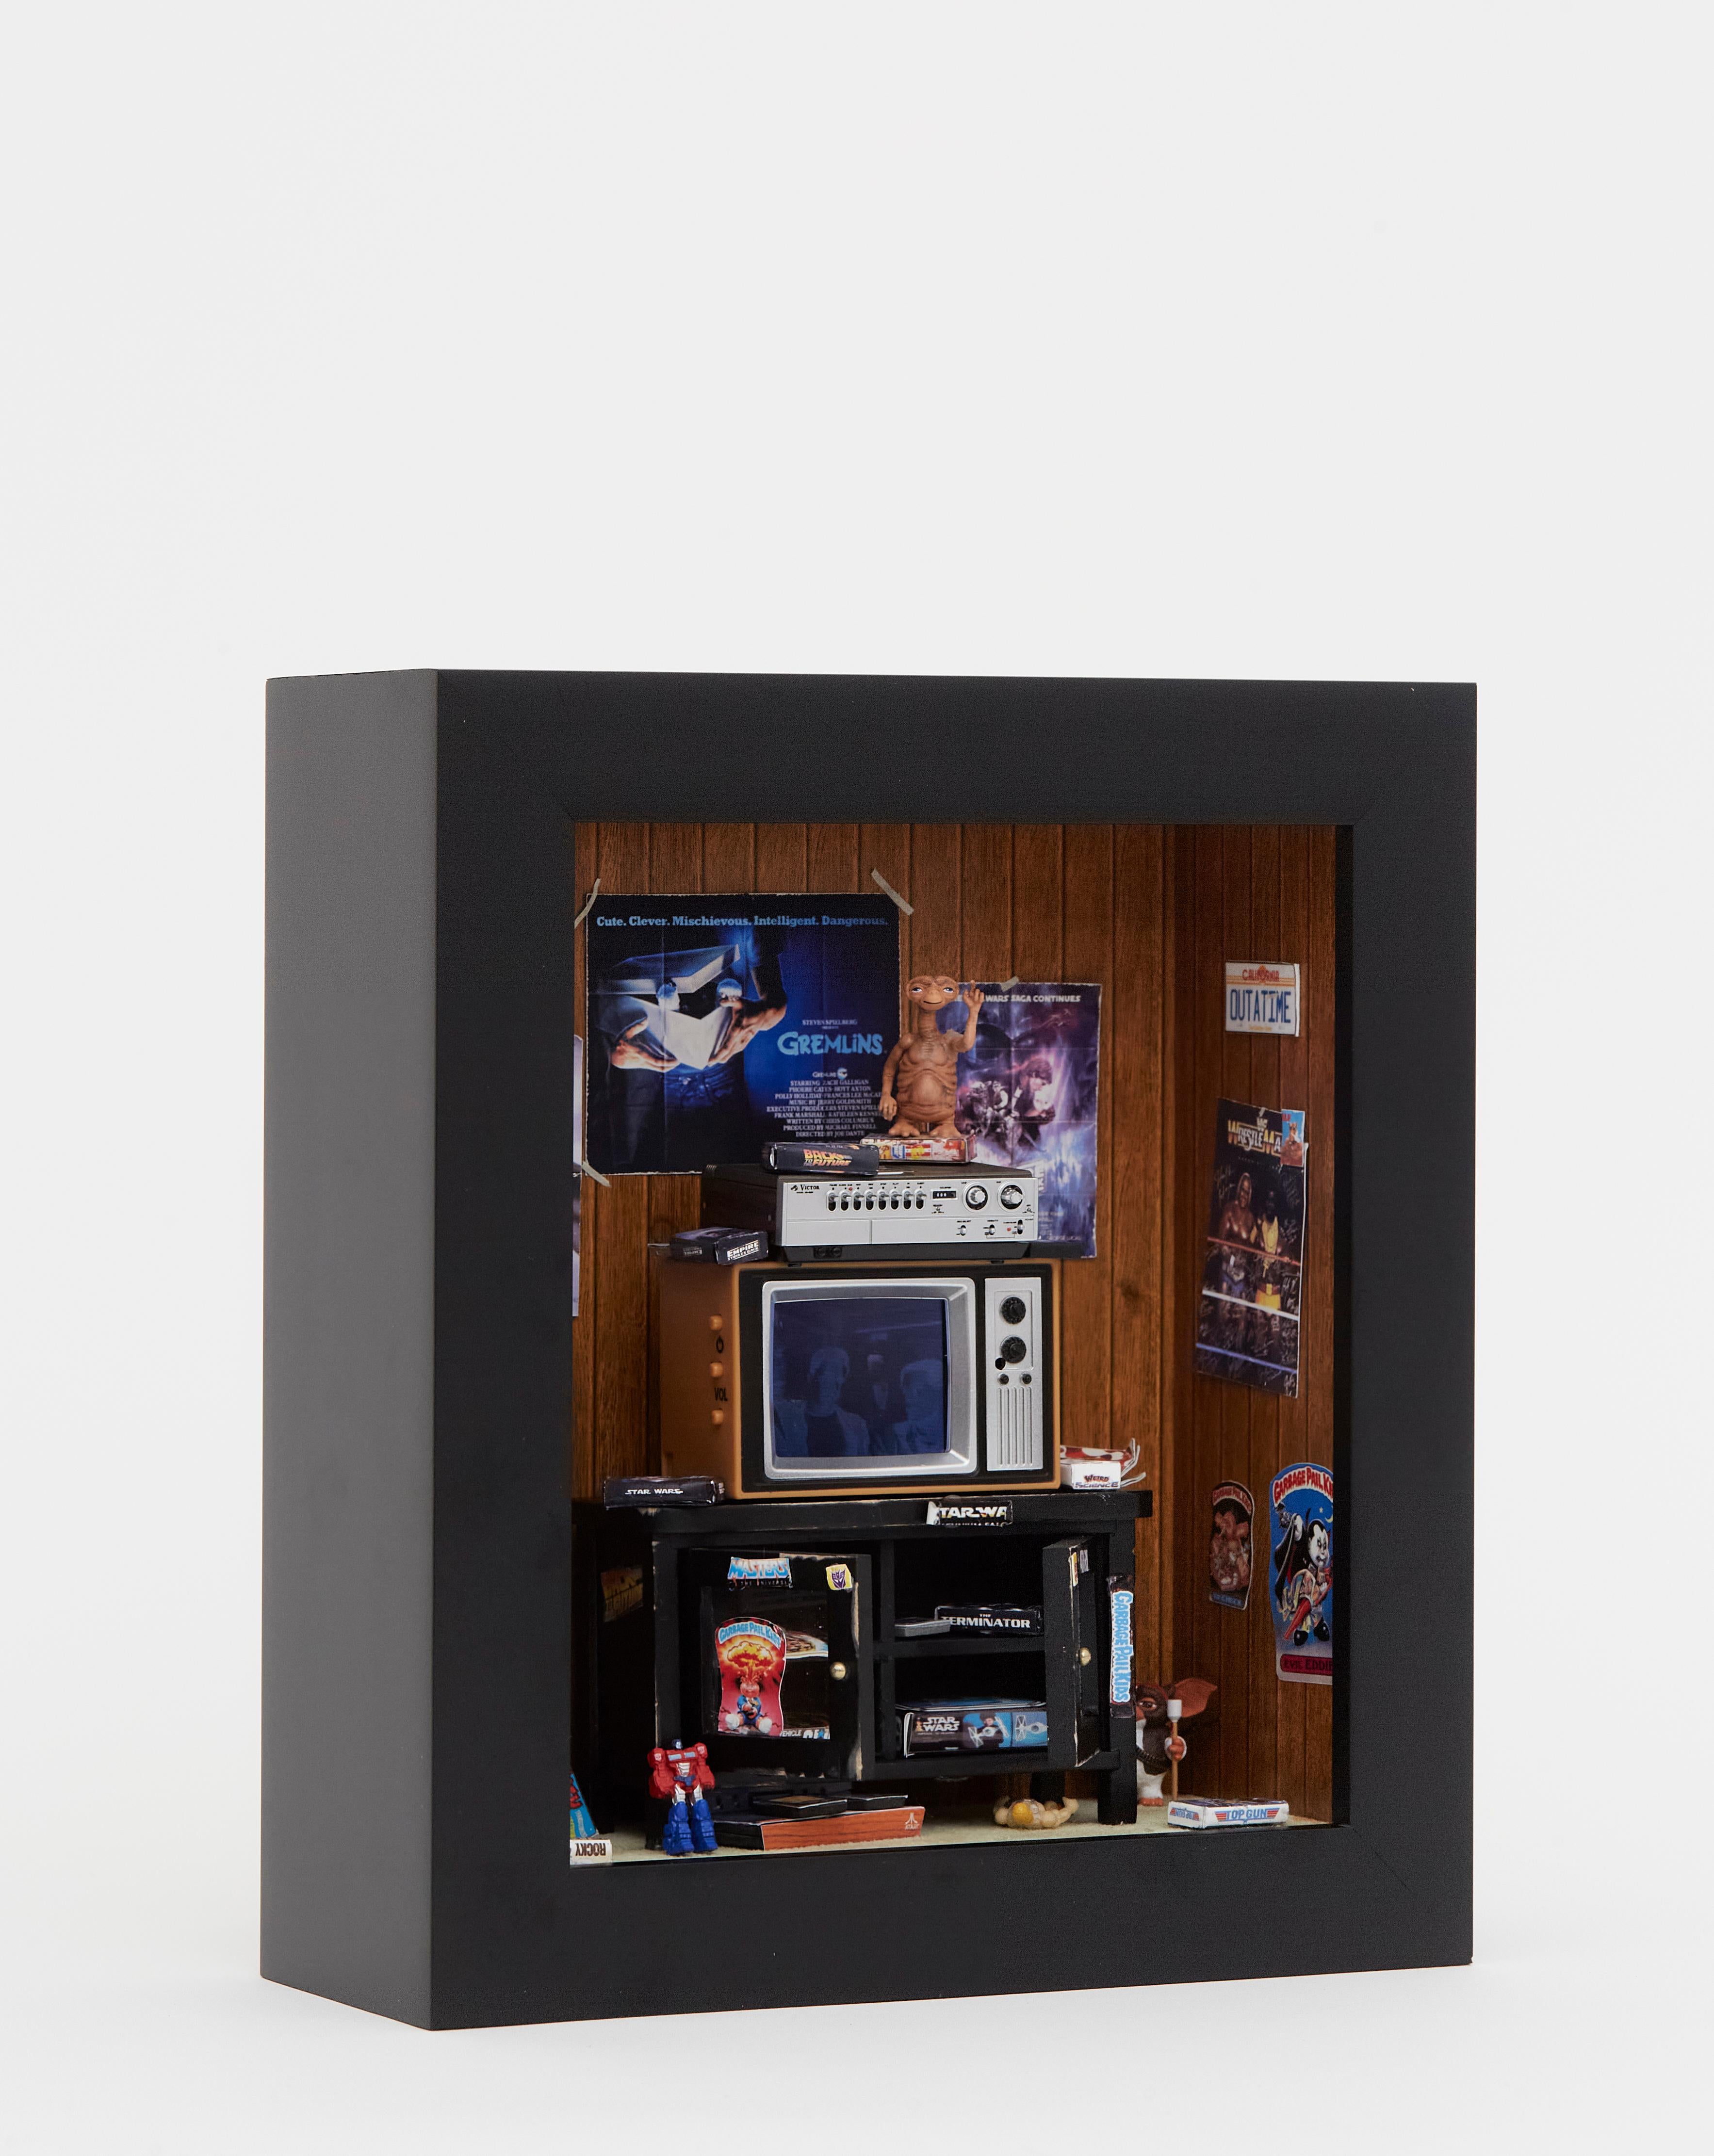 MINIATURE GEN X ROOM DIORAMA BOX -80'S BEDROOM w WORKING T.V. Pop Art - ATARI 6